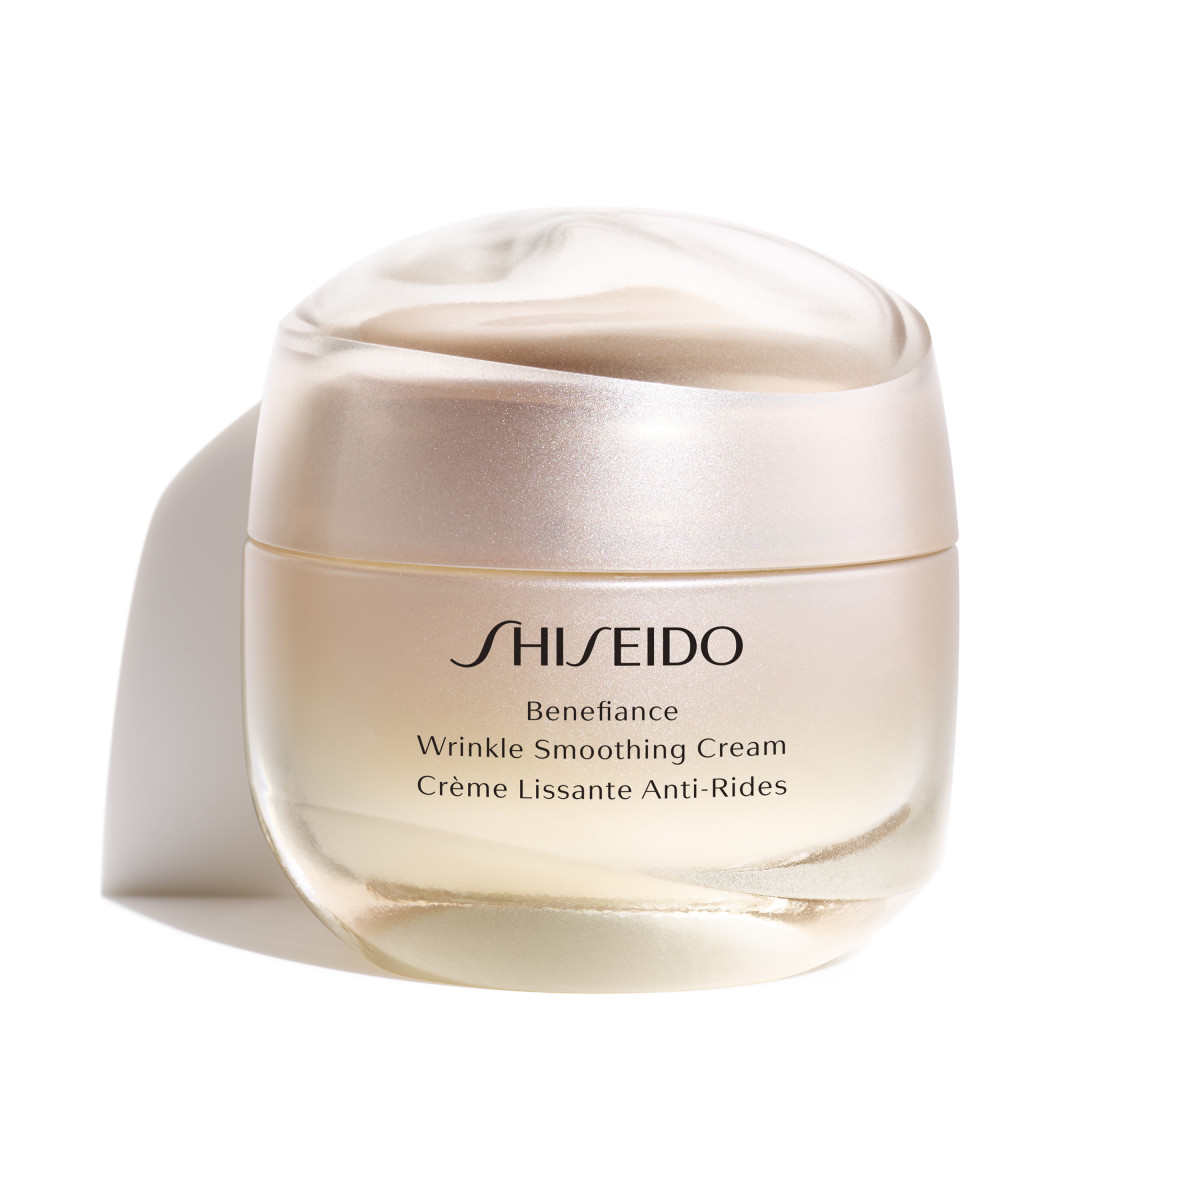 Benefiance Wrinkle Smoothing Cream - Shiseido - 50 ml - cos